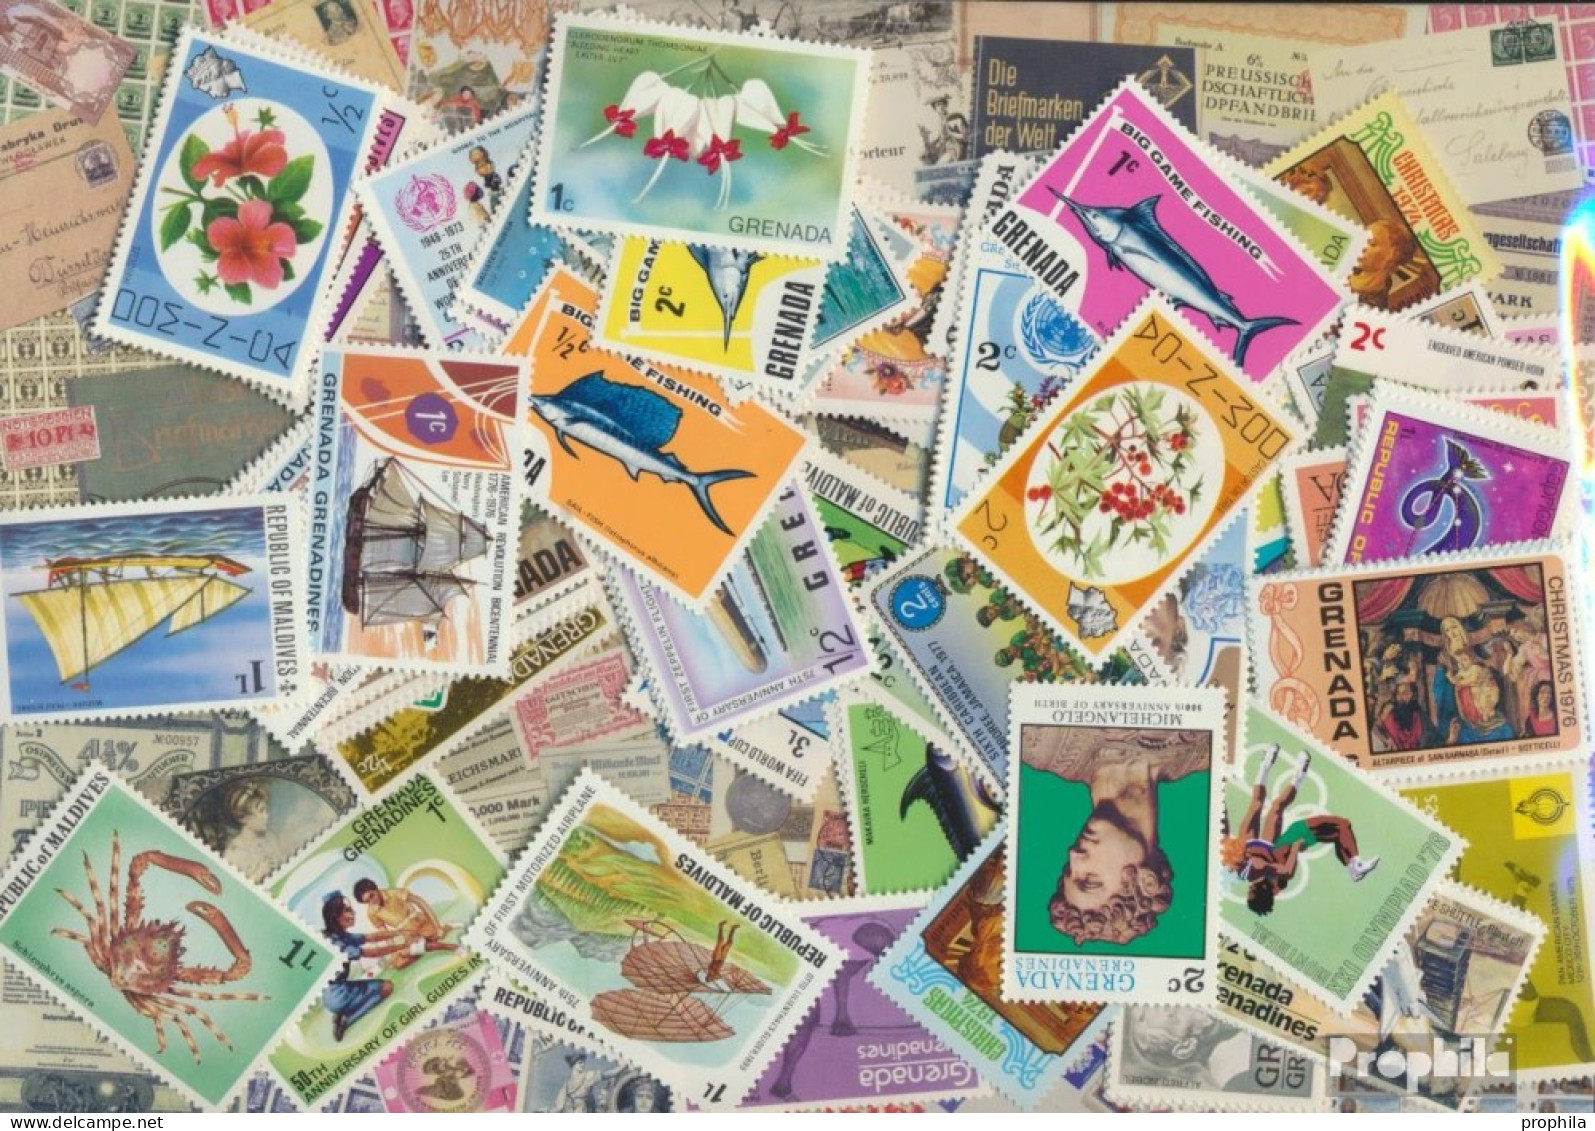 Großbritannien 100 Verschiedene Marken Postfrisch Britische Kolonien Und Empire - Collezioni